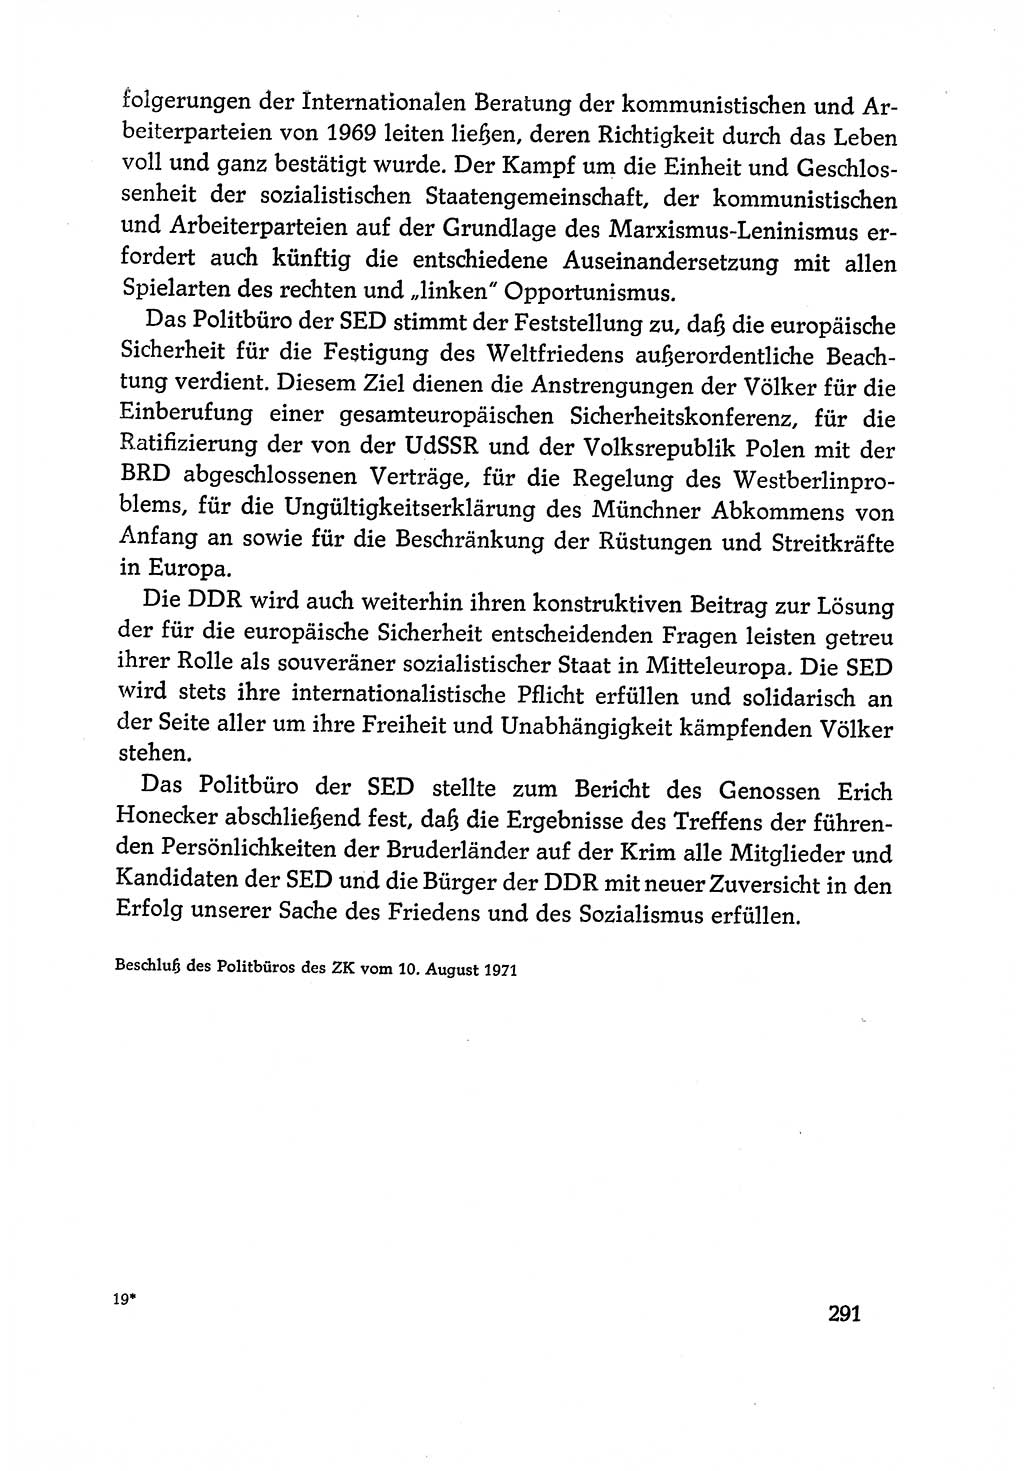 Dokumente der Sozialistischen Einheitspartei Deutschlands (SED) [Deutsche Demokratische Republik (DDR)] 1970-1971, Seite 291 (Dok. SED DDR 1970-1971, S. 291)